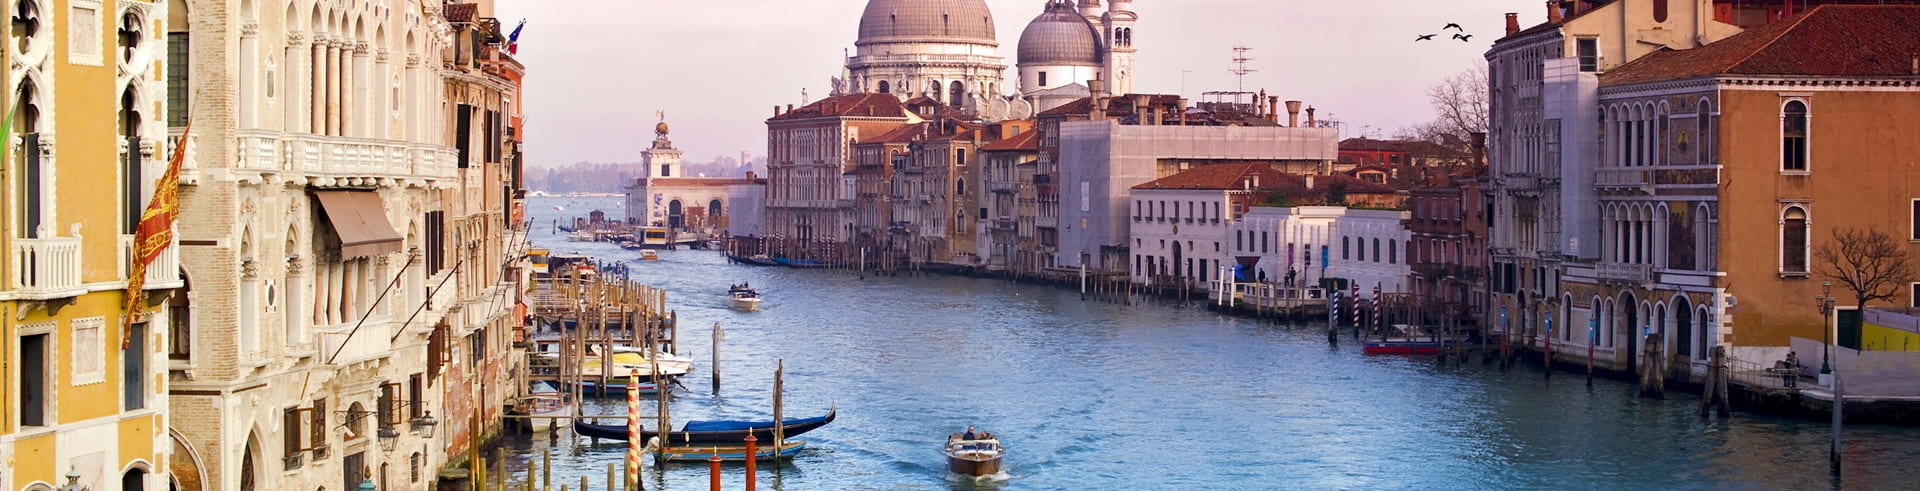 Location de Voitures Venise